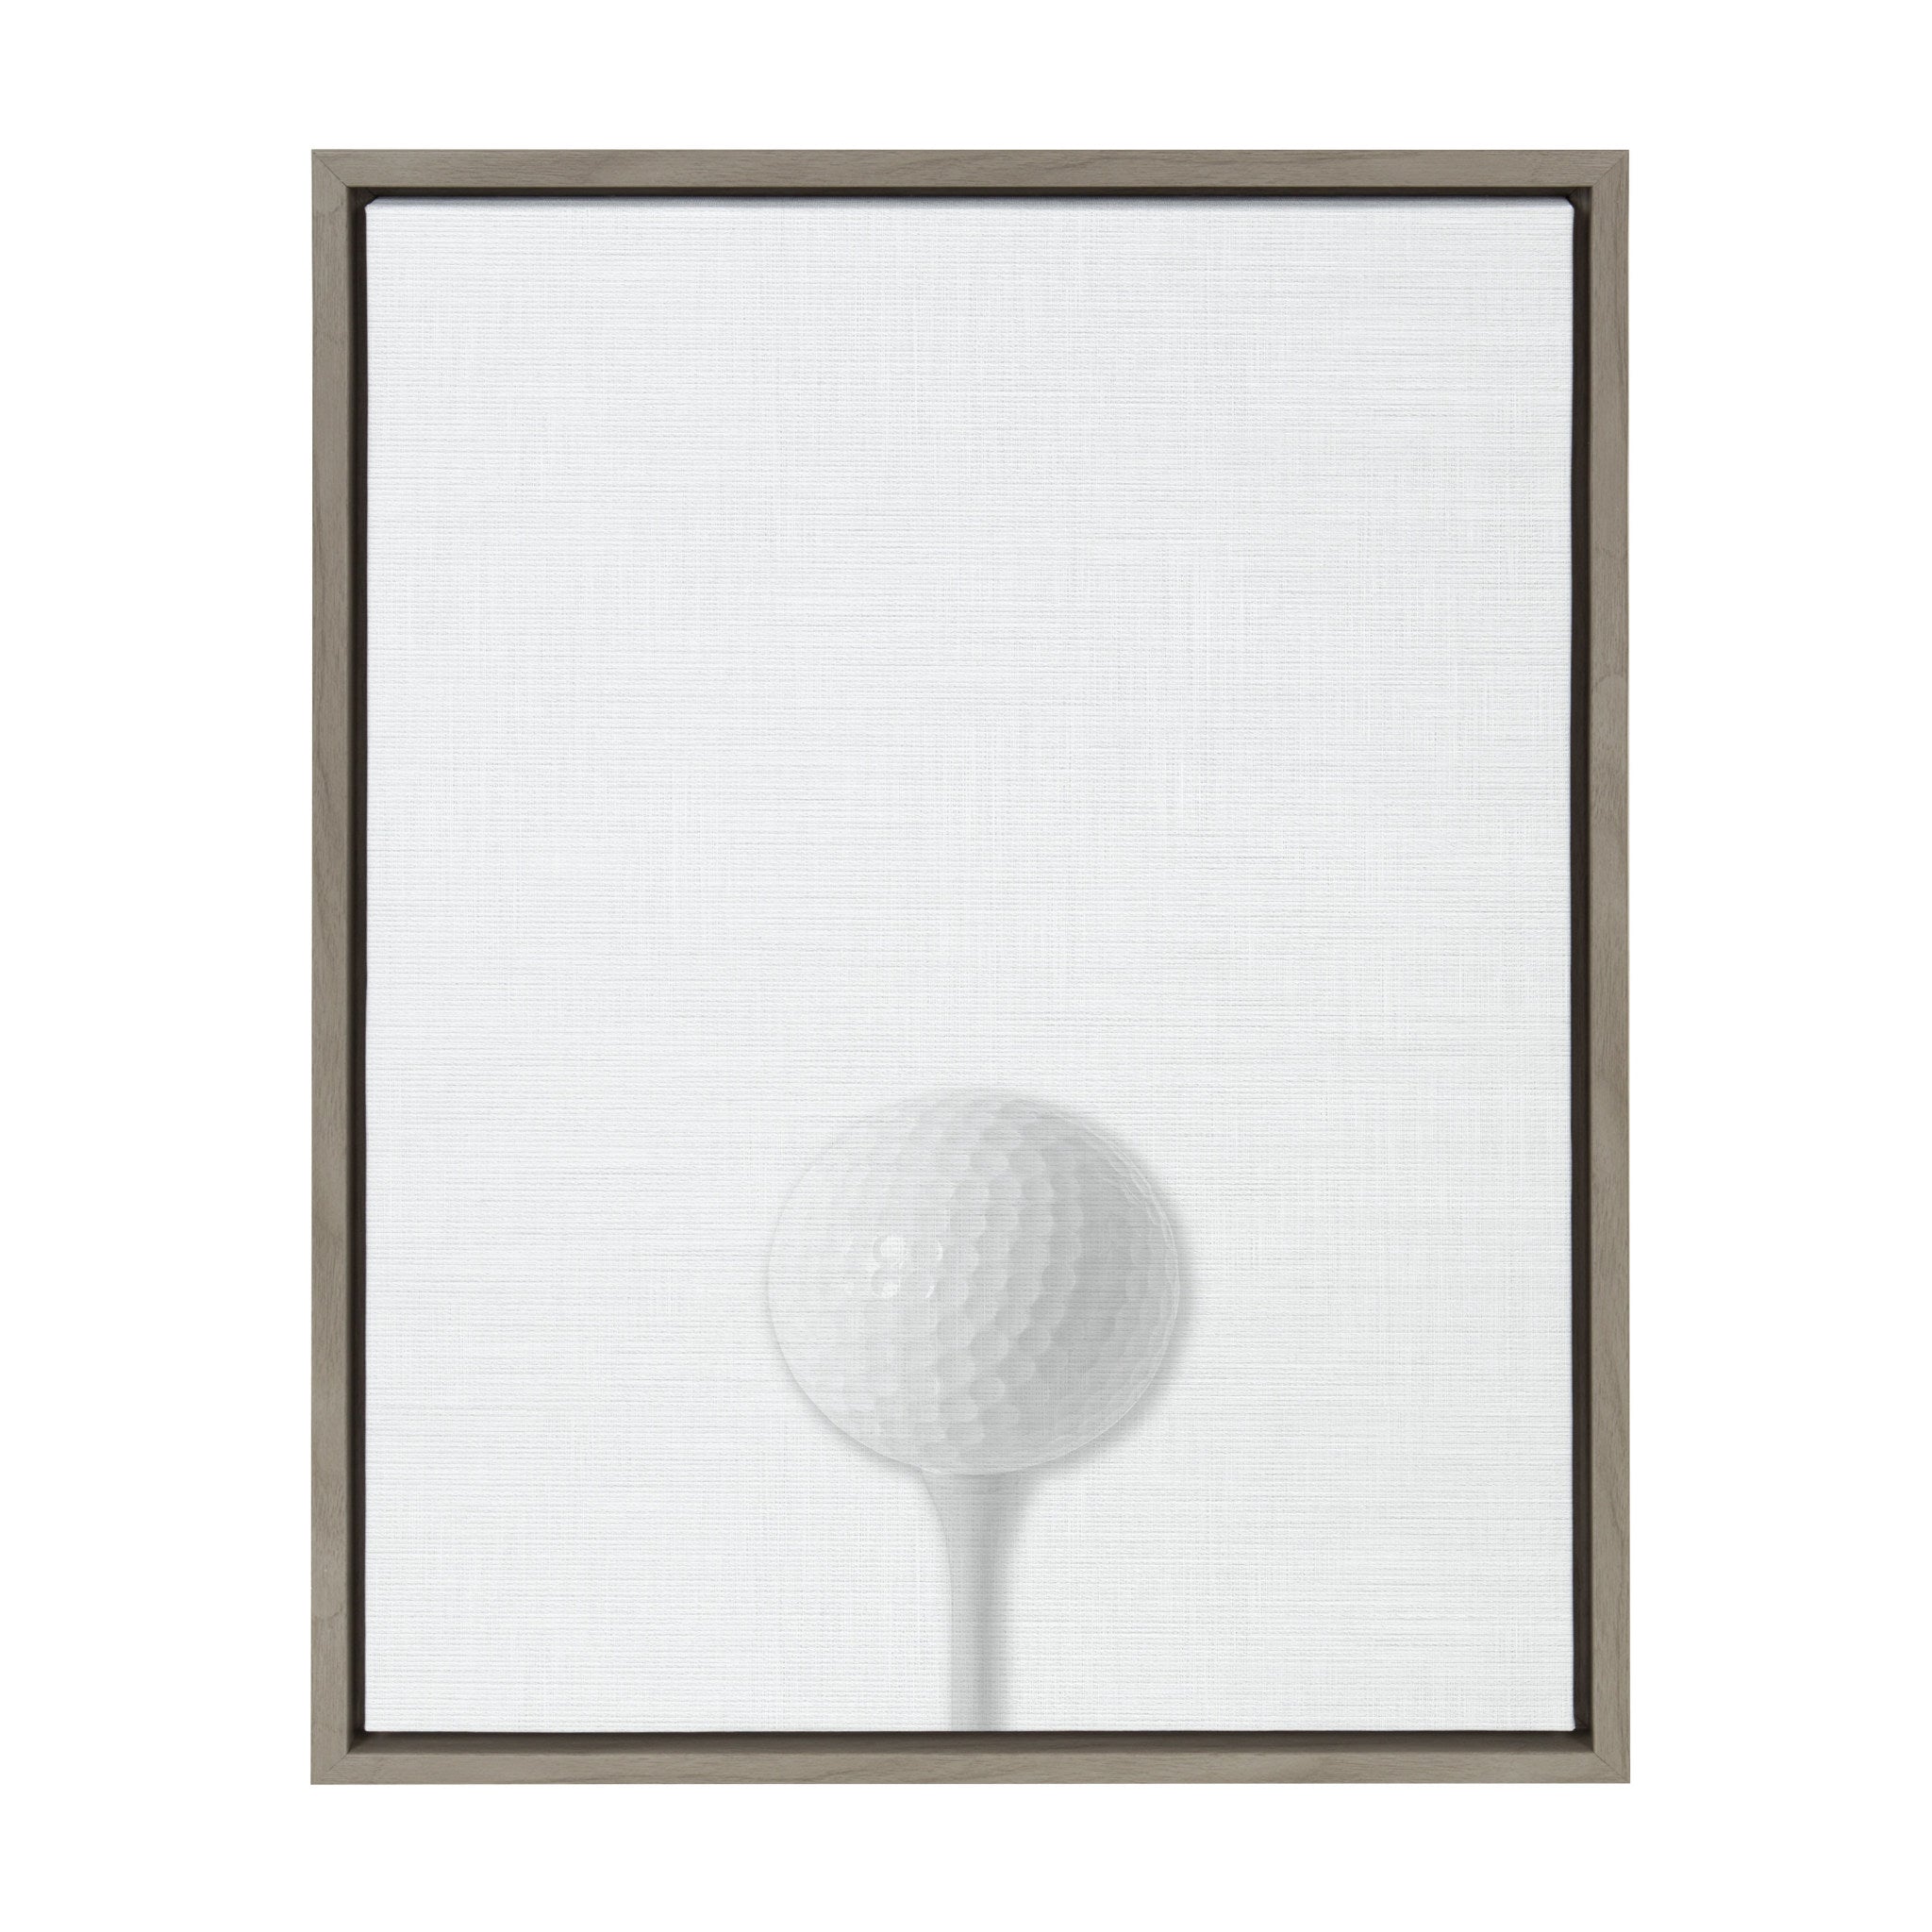 Sylvie Golf Ball Portrait Framed Canvas, Gray 18x24